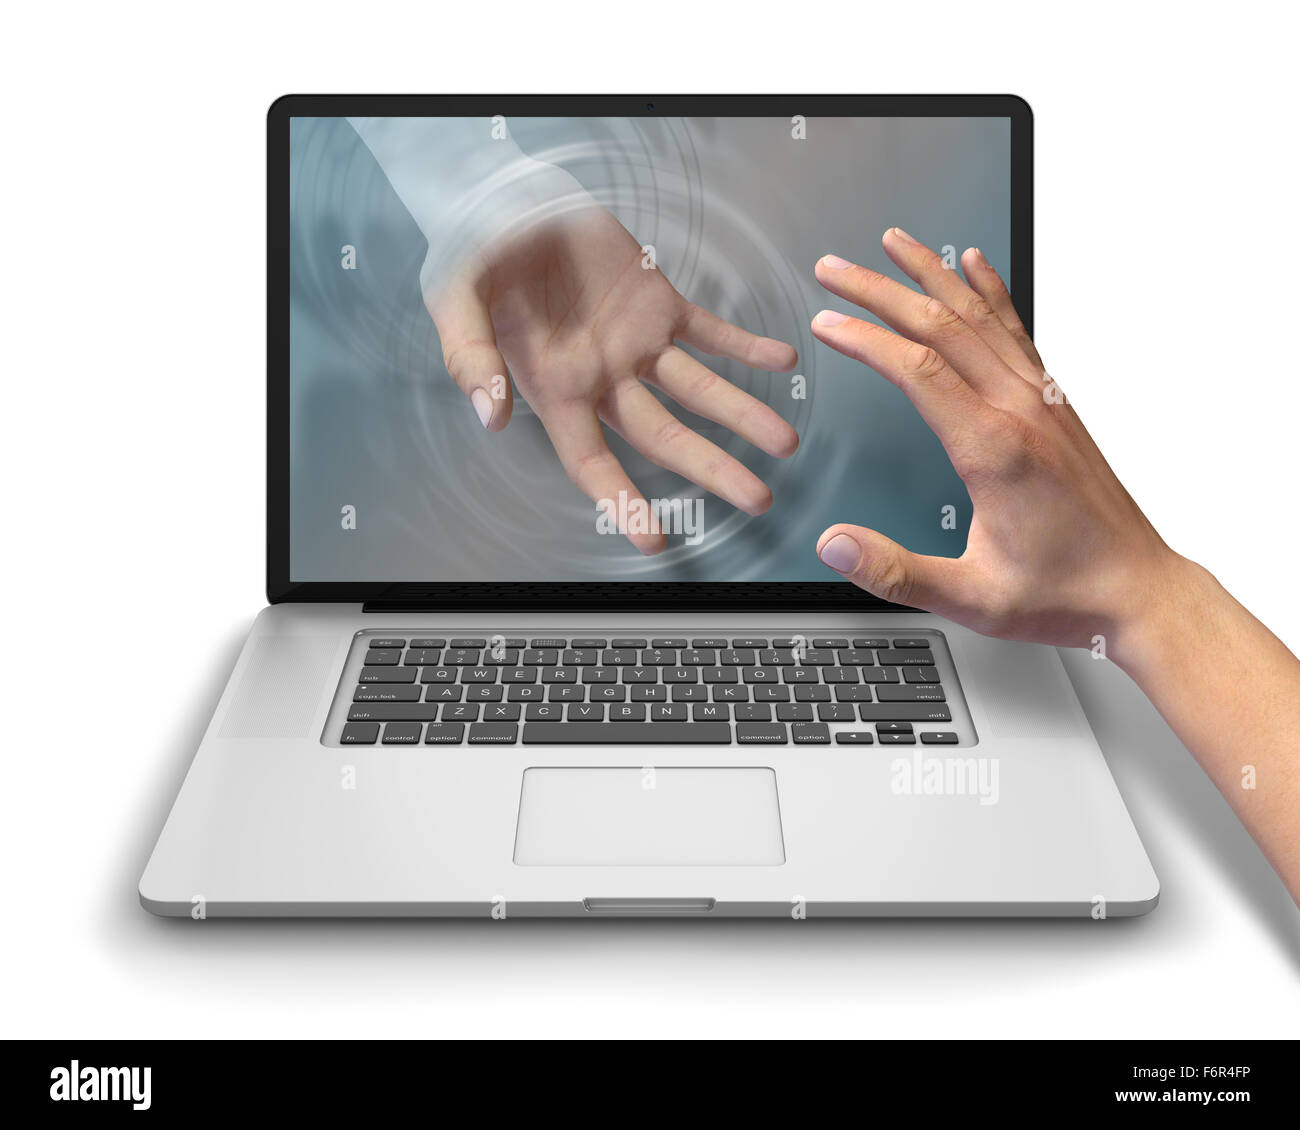 Helfende Hand erreicht durch Laptop-Computer Bildschirm ihre Benutzer Hilfe und Unterstützung anzubieten. Wer ist gegenüber der Gleitschuh erreichen Stockfoto